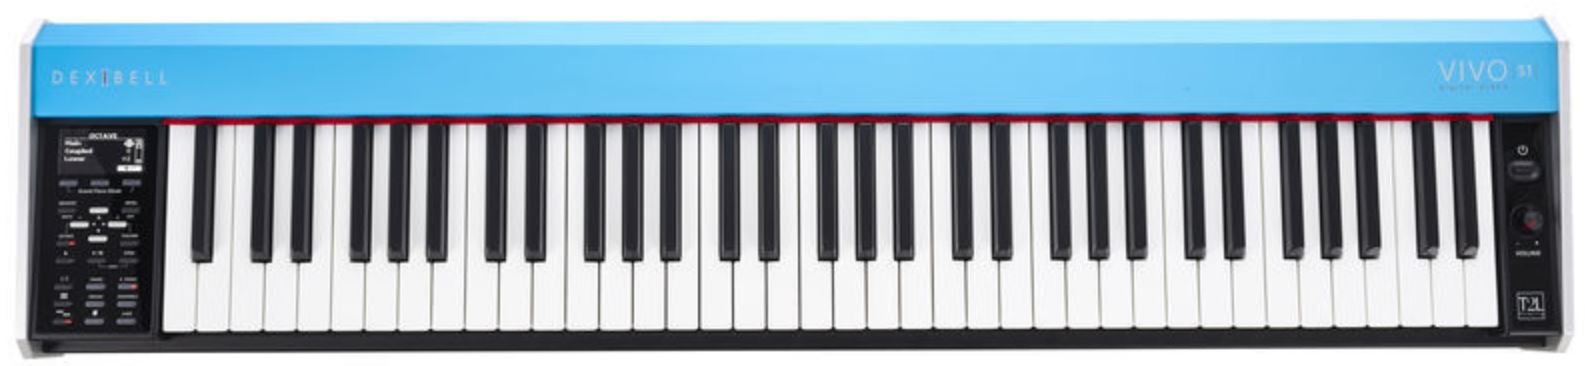 Dexibell VIVO S1 сценическое цифровое пианино, 68 клавиши, клавиатура взвешенная от музыкального магазина МОРОЗ МЬЮЗИК